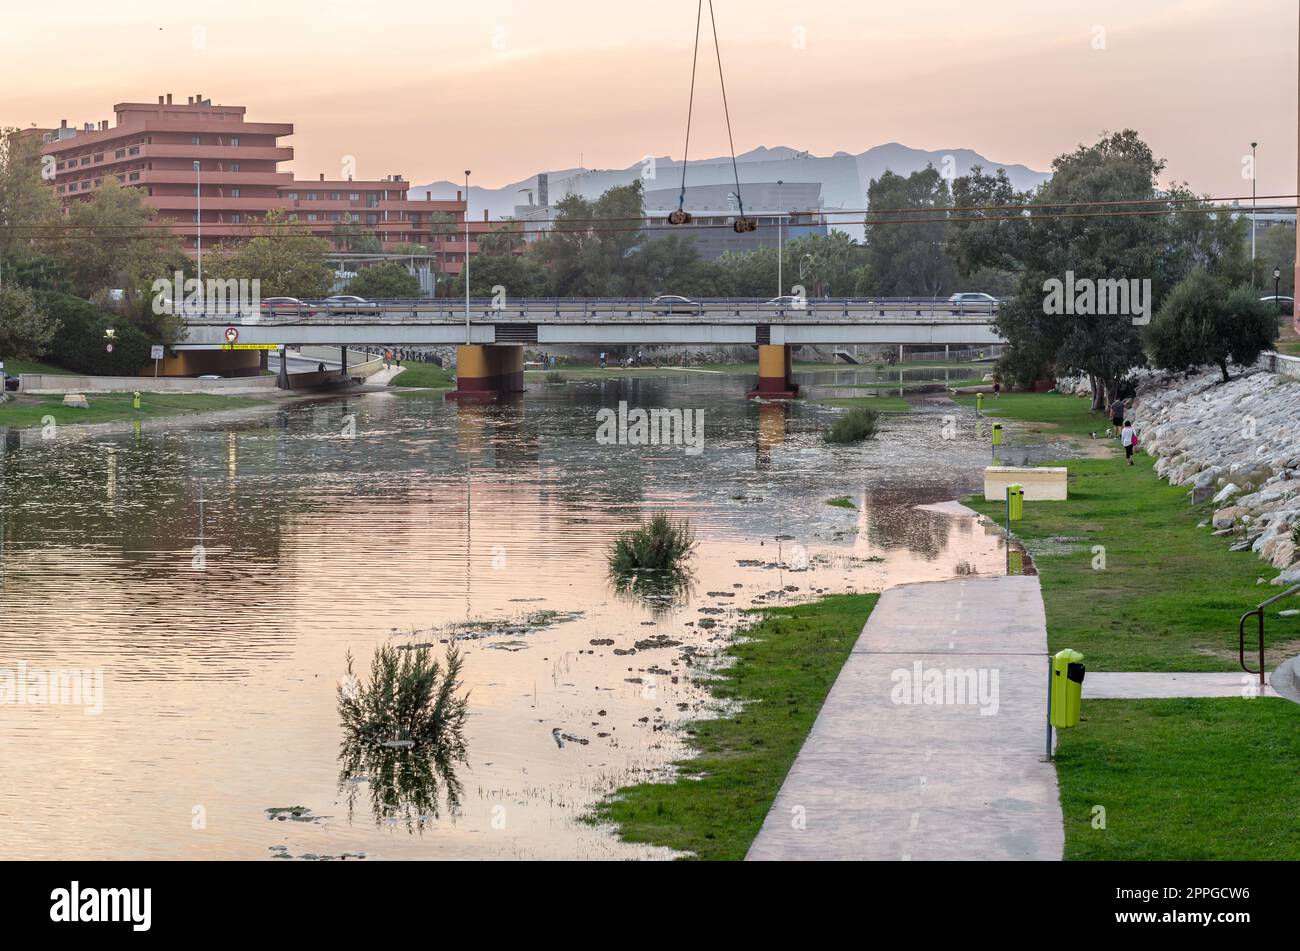 FUENGIROLA, ESPAGNE - 11 OCTOBRE 2021 : zone inondée sur les rives de la rivière Fuengirola lors d'une tempête dans la ville de Fuengirola, Andalousie, sud de l'Espagne Banque D'Images